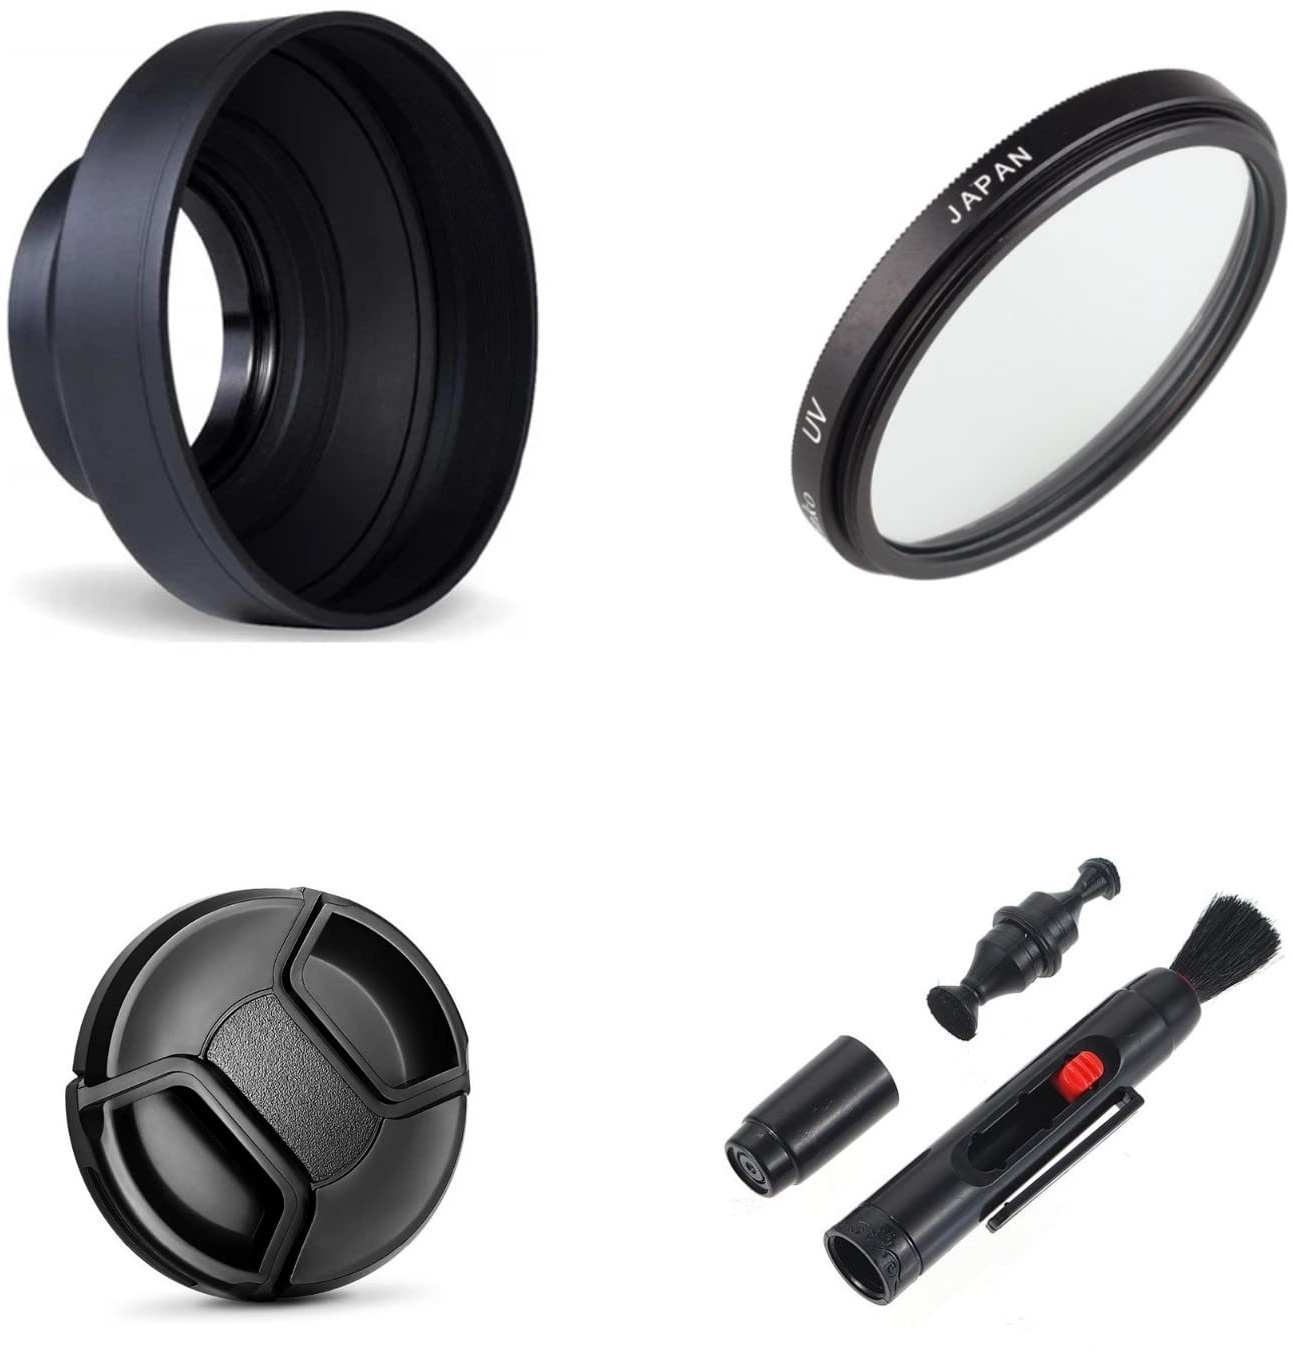 Kamera Zubehör Bundle Set für Nikon Coolpix P950 P900 P900s inkl. 3-stufiger faltbarer Gegenlichtblende, UV-Filter, Objektivdeckel, Reinigungsstift